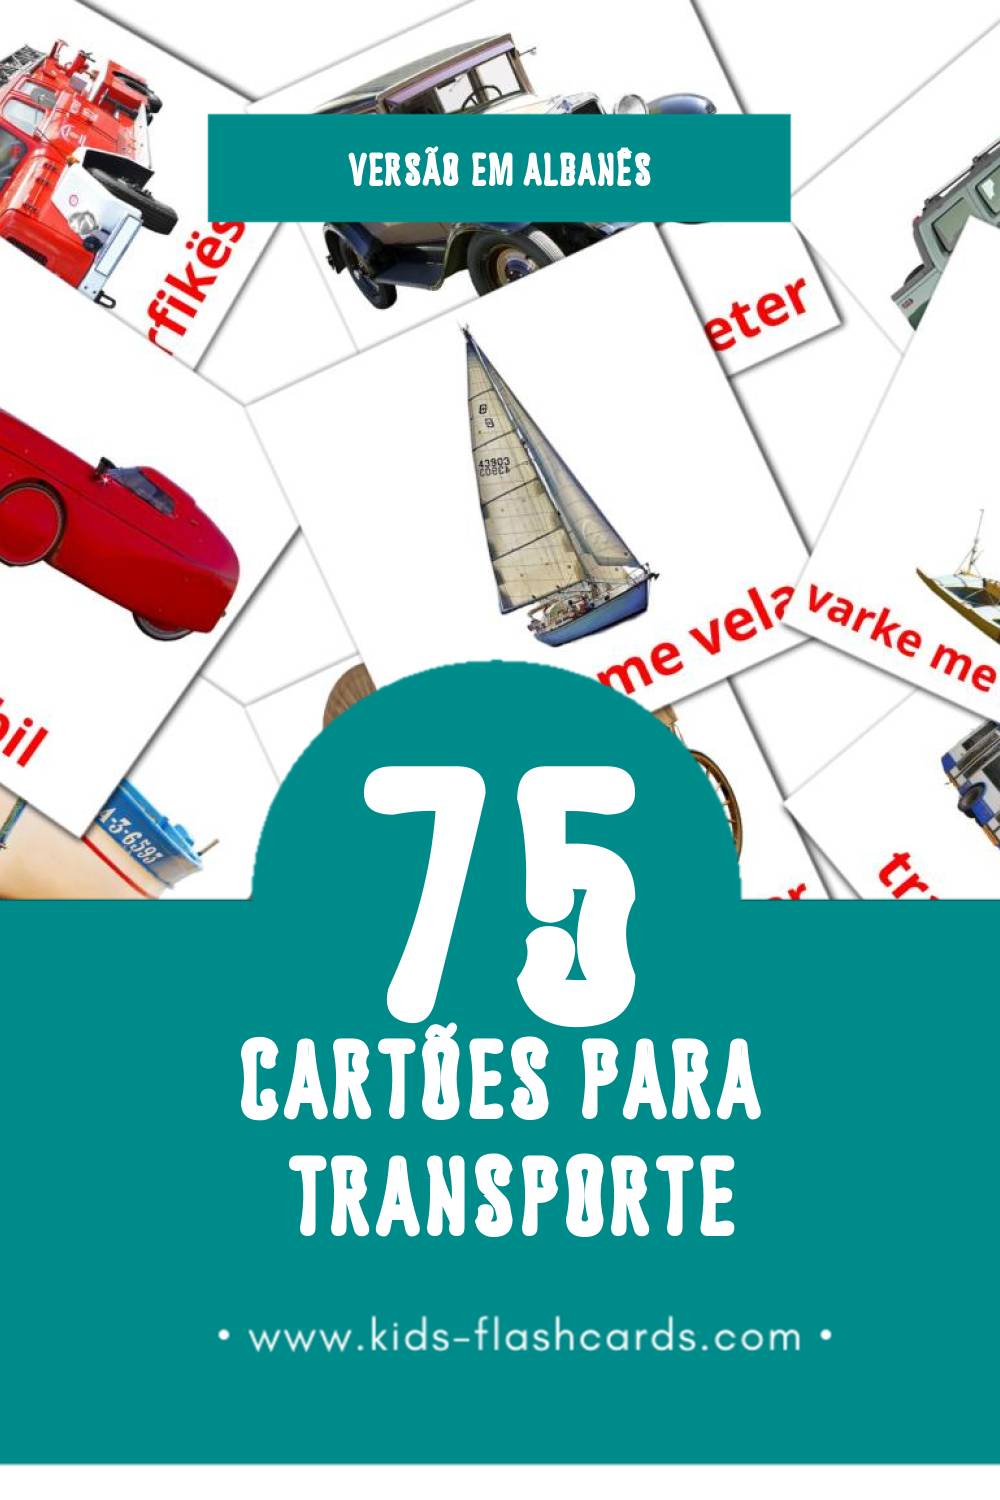 Flashcards de Transporti Visuais para Toddlers (87 cartões em Albanês)